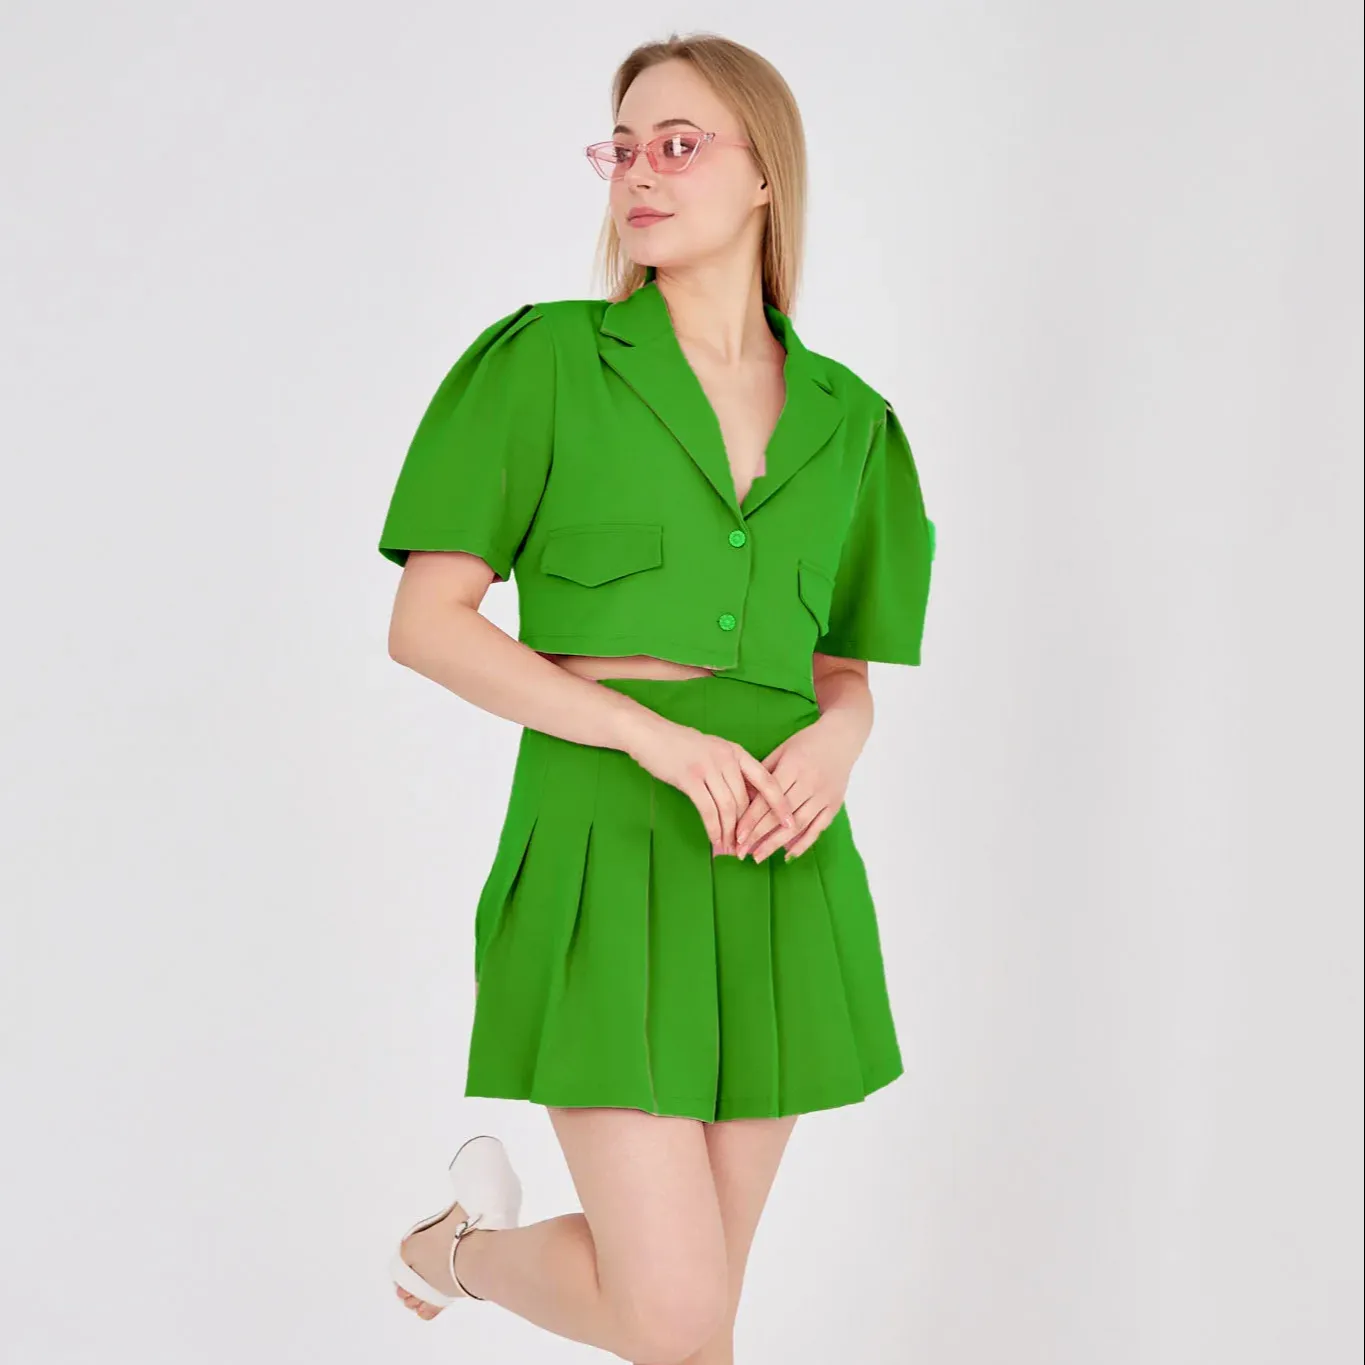 Conjunto de falda y chaqueta de tela de pantalones cortos de color verde Conjunto de falda y chaqueta de pantalones cortos detallados con botones verdes